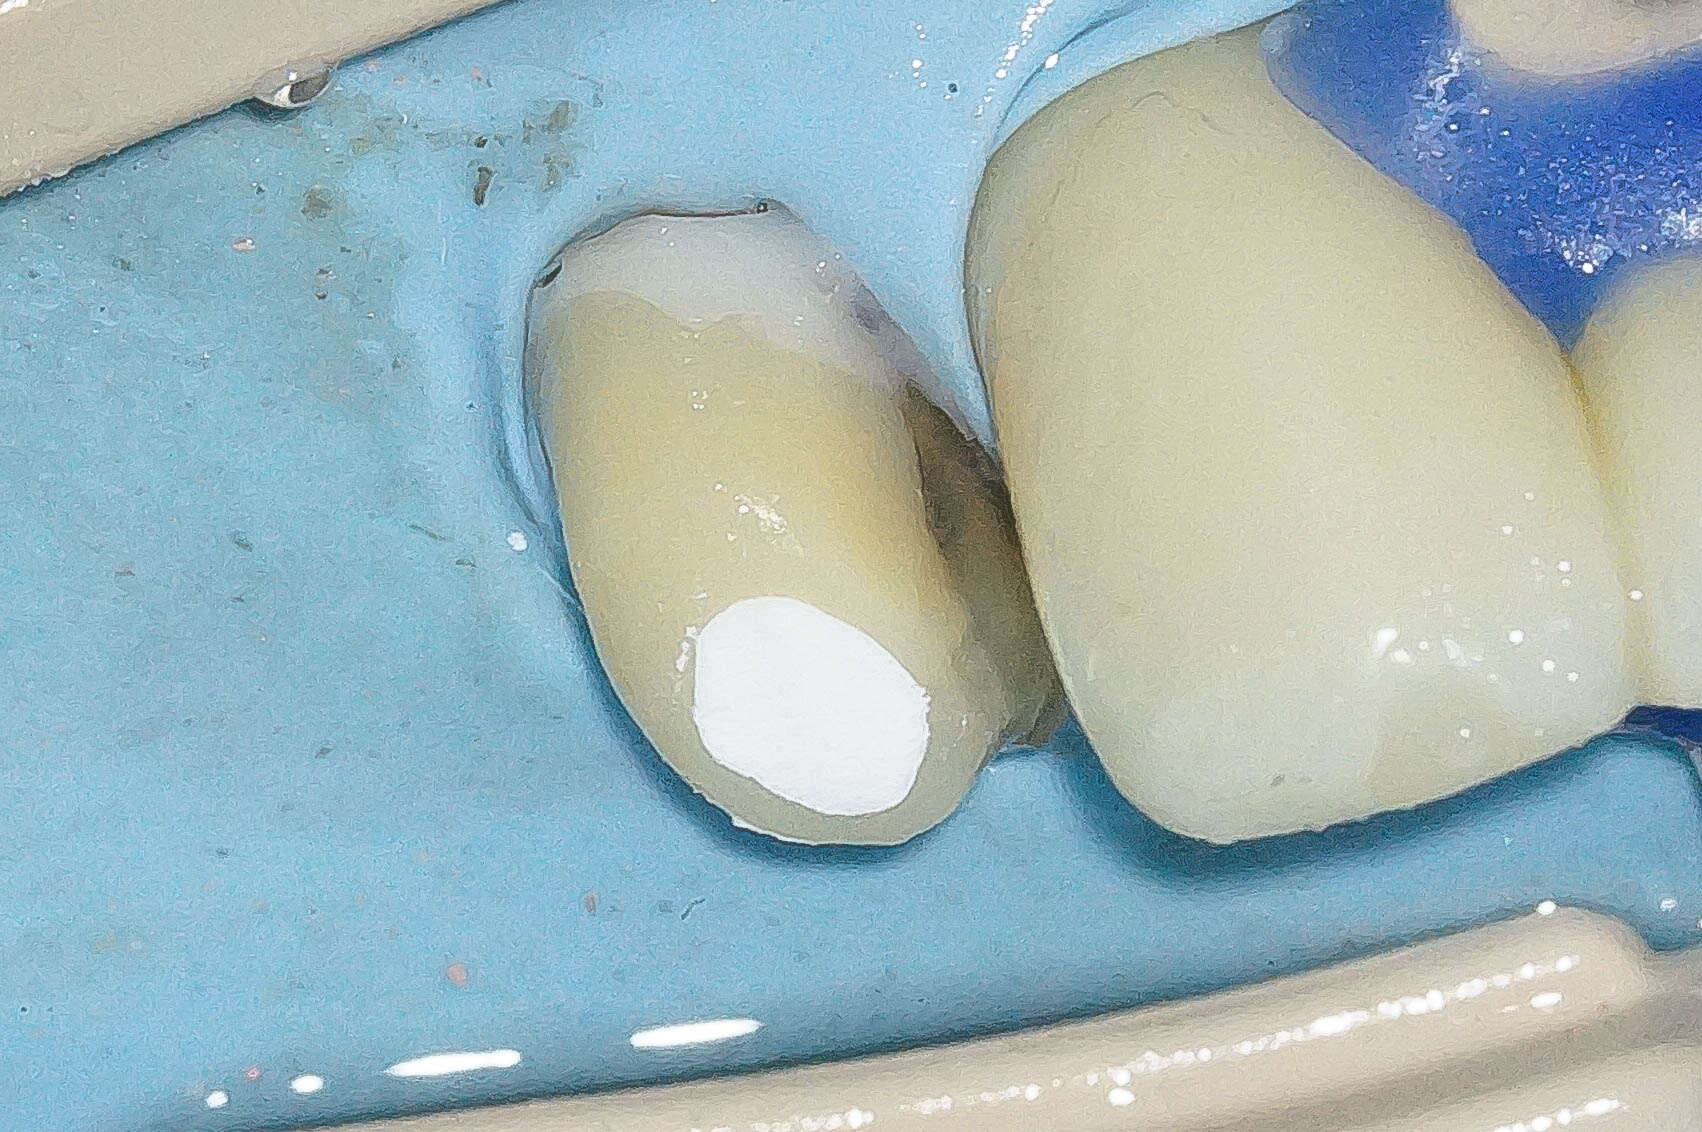 精密根管治療にて抜歯を回避した症例 3治療方法15